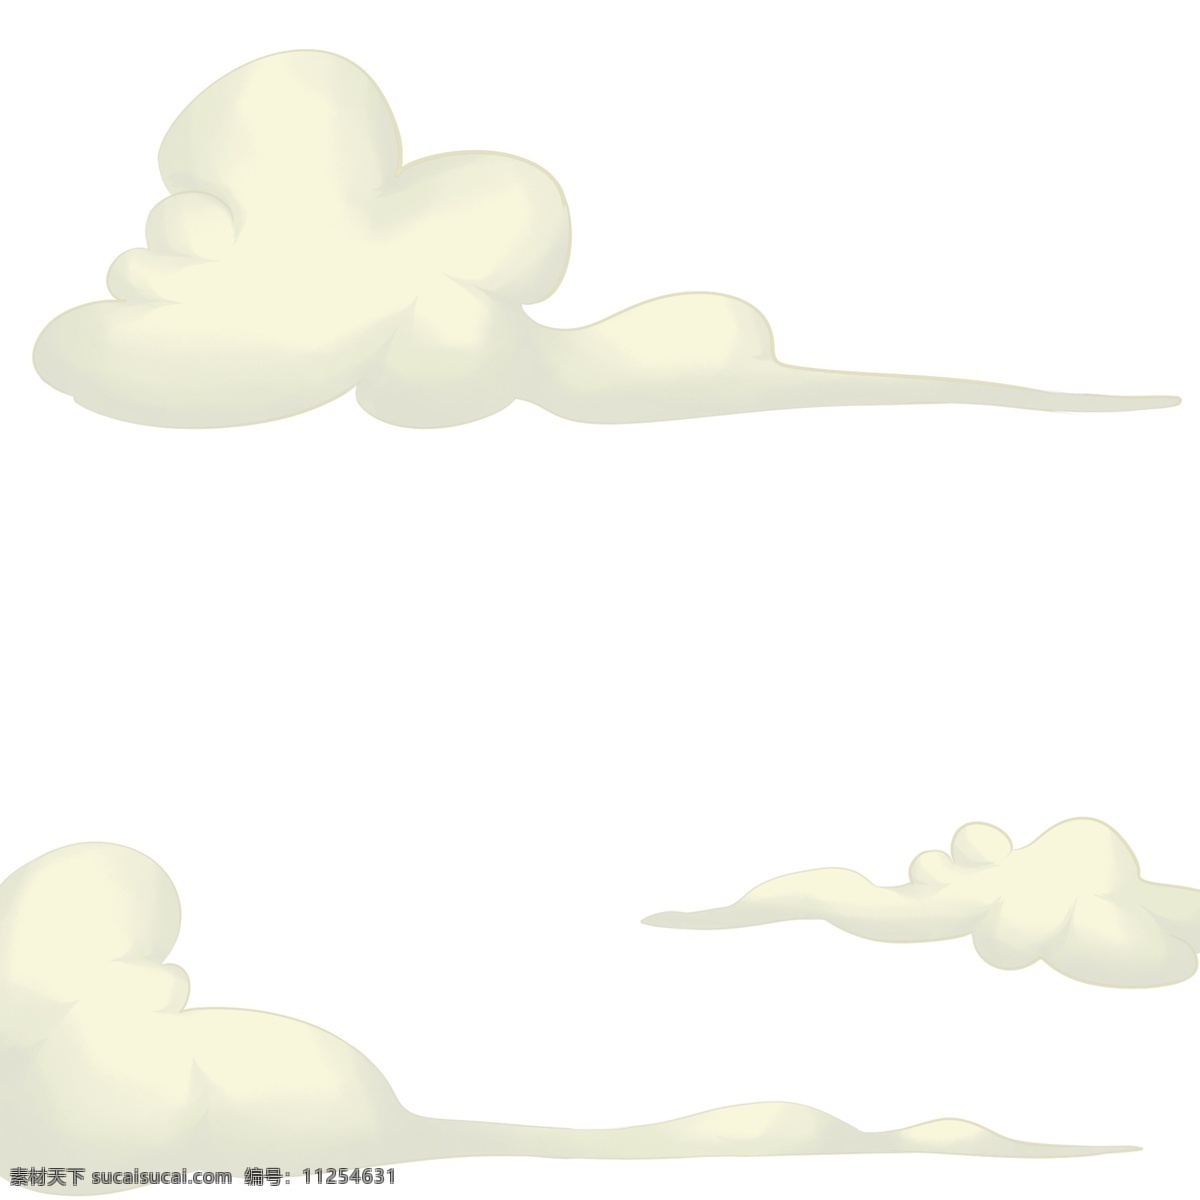 洁白 梦幻 白云 设计图 中国风 云朵 祥云 白色云朵 仙境 洁白无瑕 卡通 创意卡通 插图